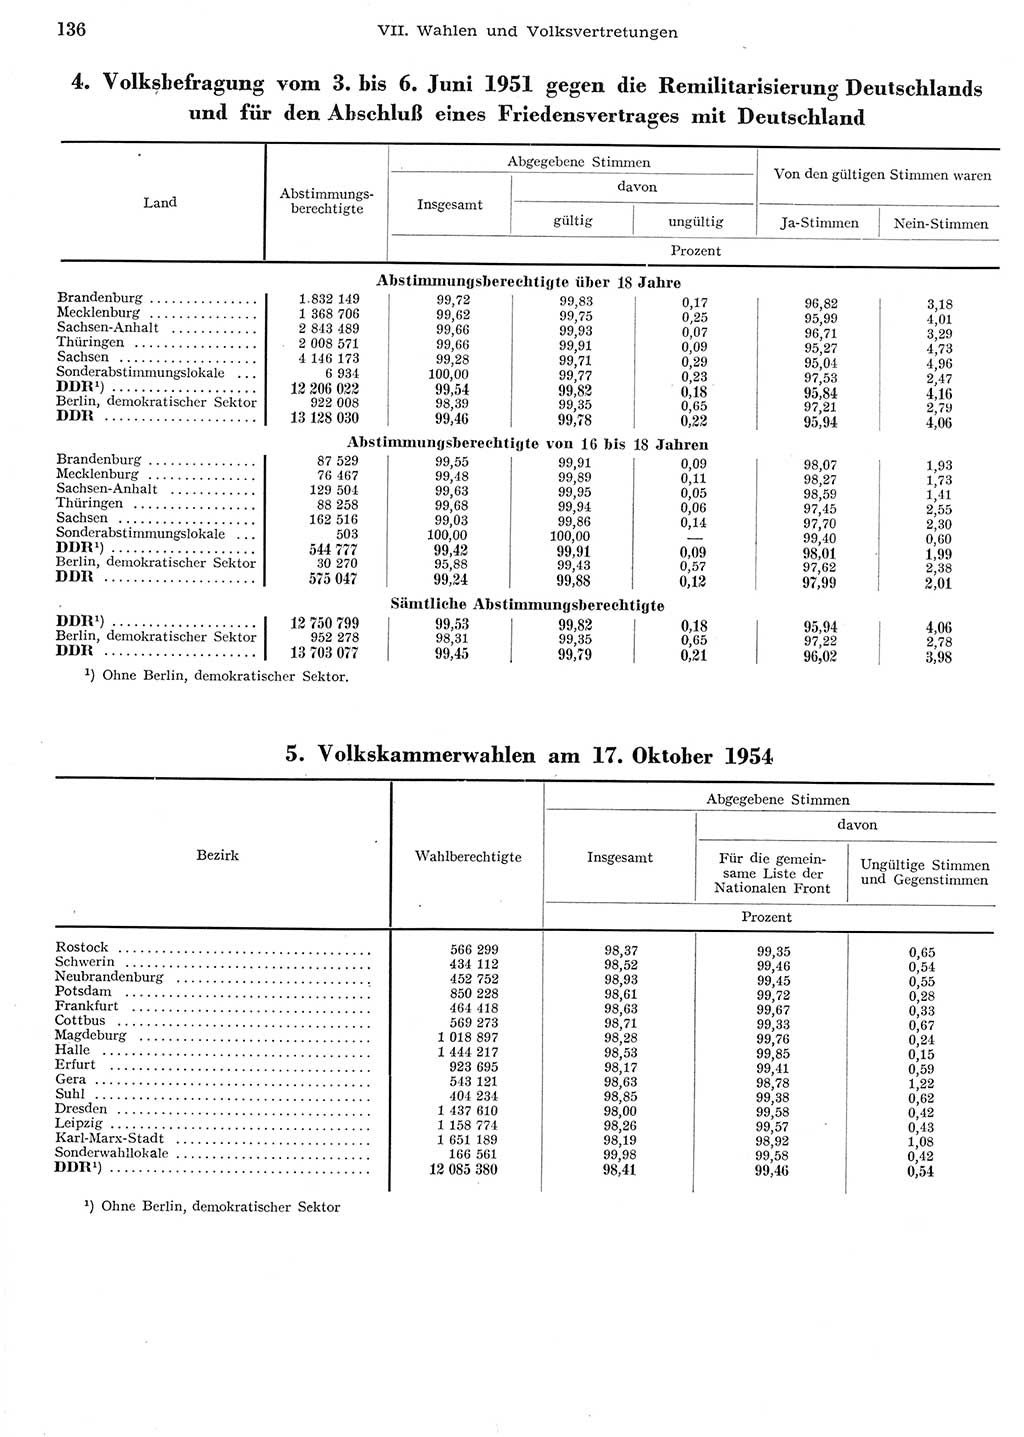 Statistisches Jahrbuch der Deutschen Demokratischen Republik (DDR) 1956, Seite 136 (Stat. Jb. DDR 1956, S. 136)